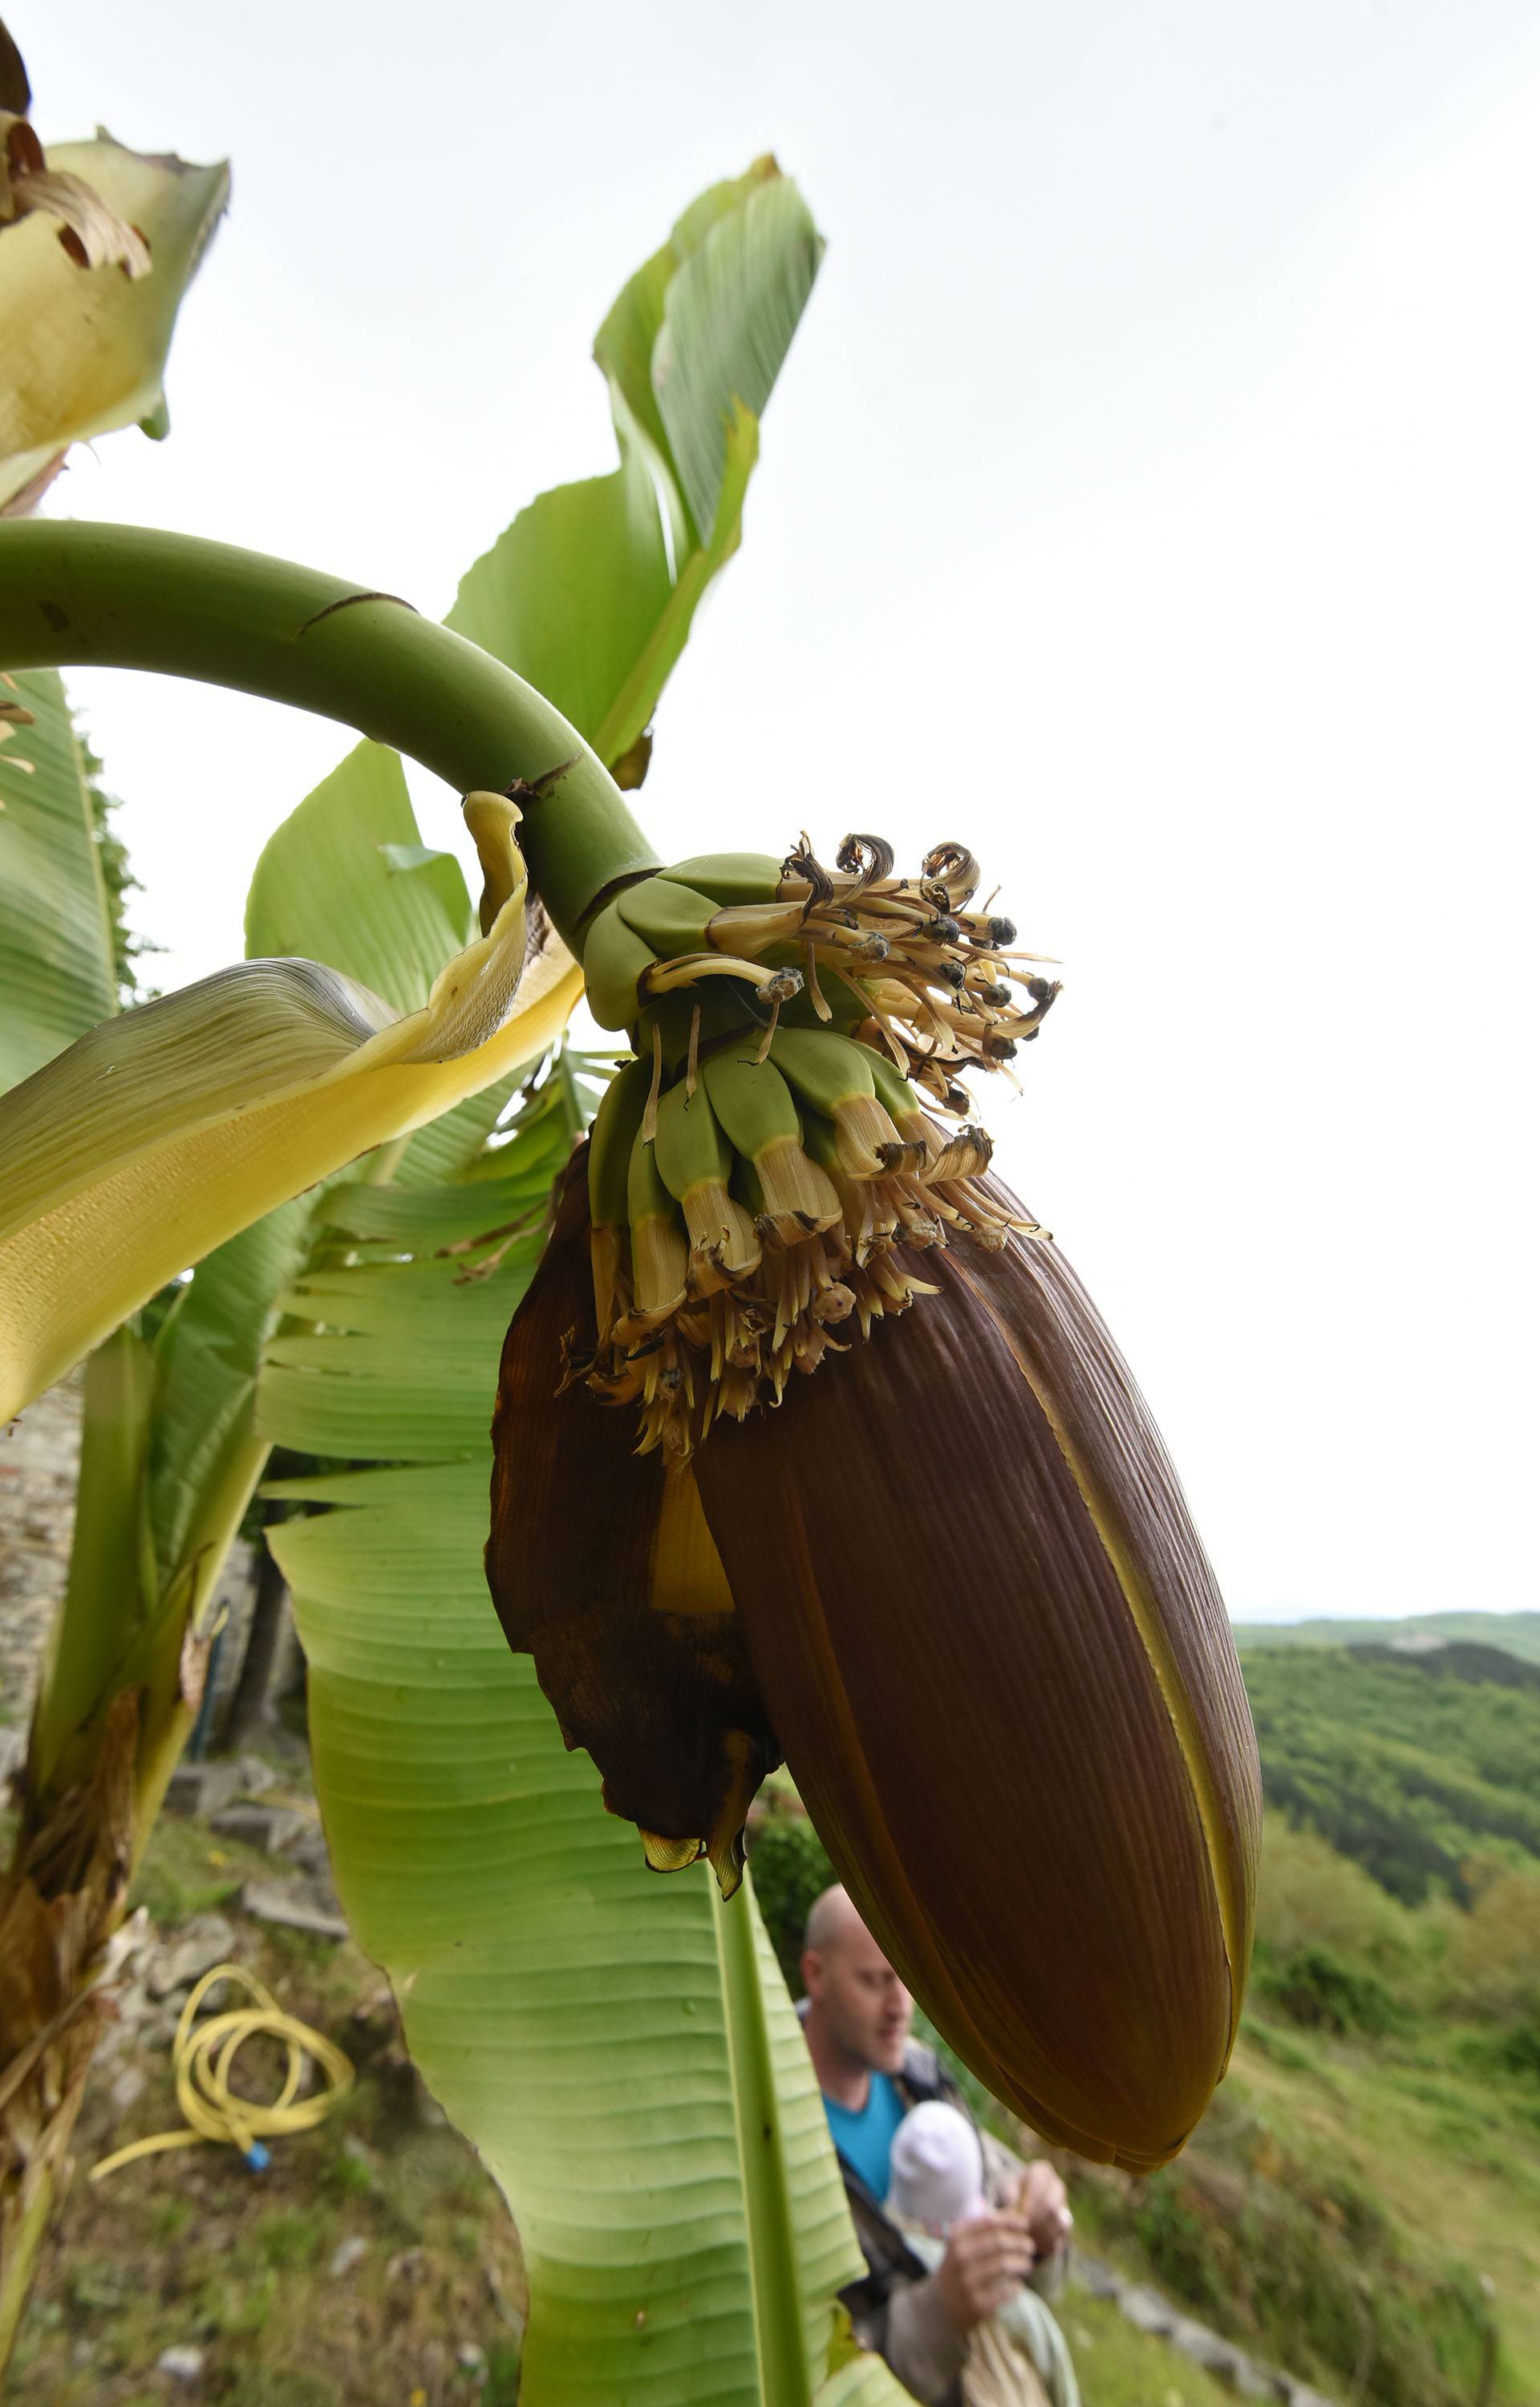 Čeka plodove: Kad se najmanje nadaš, u vrtu ti narastu banane